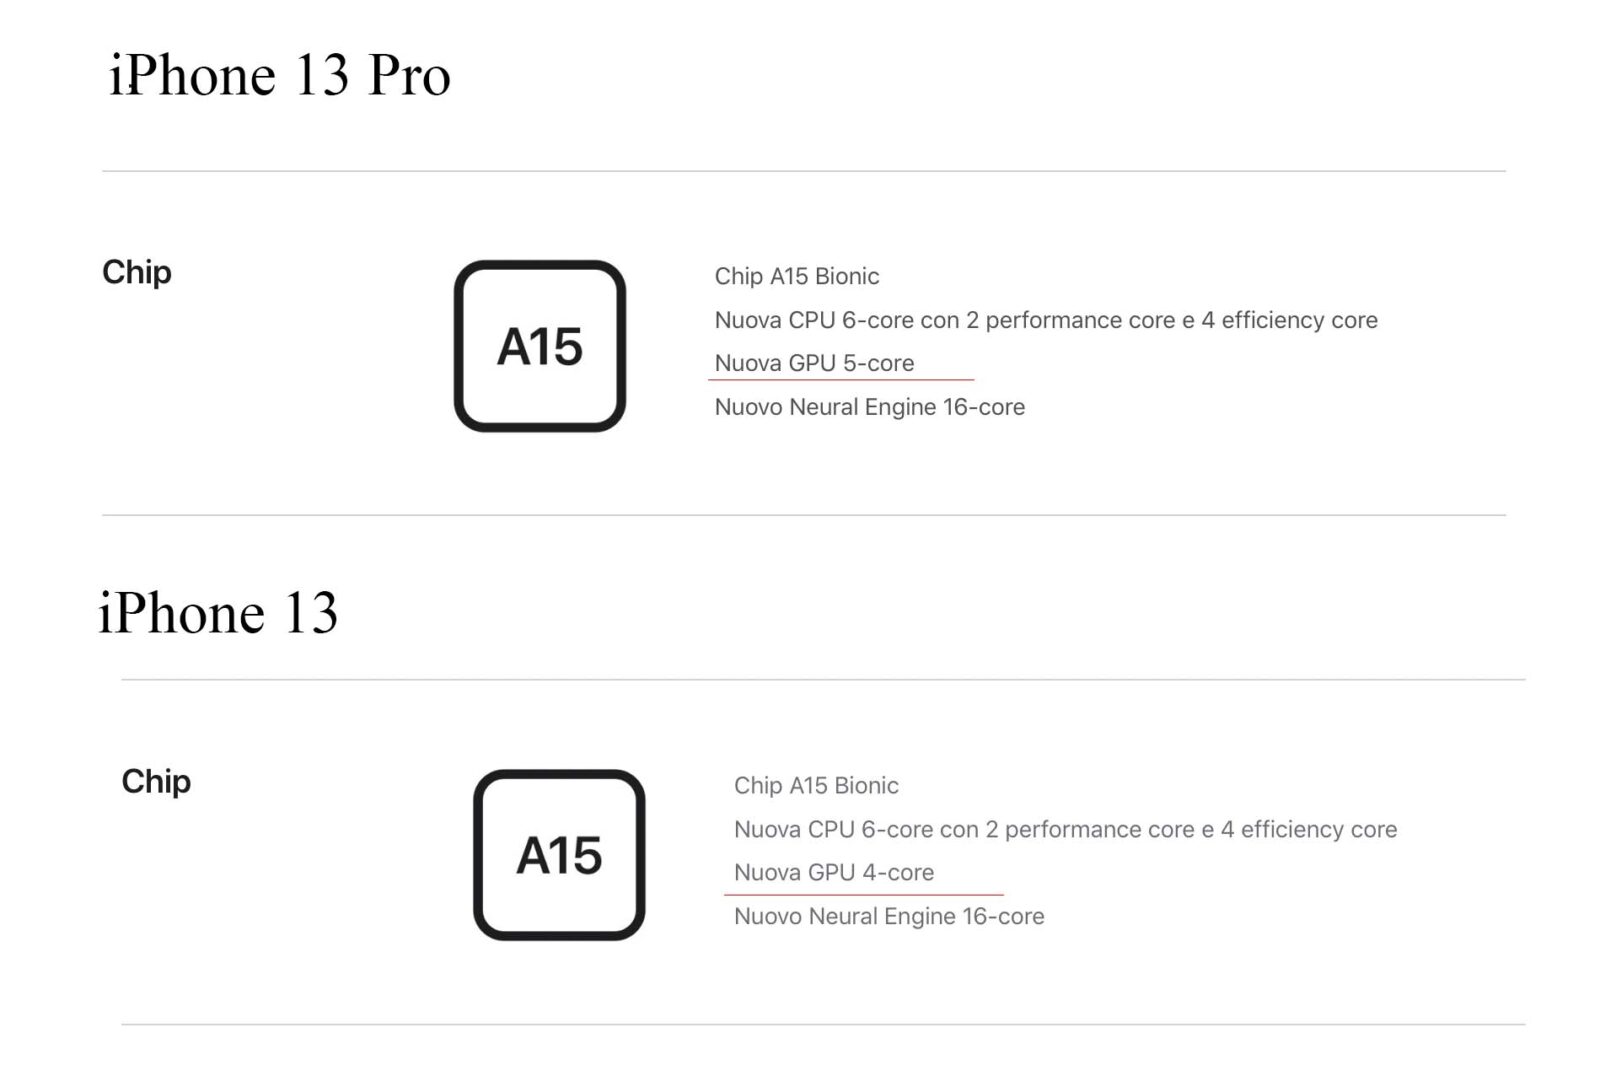 La GPU dell’iPhone 13 Pro ha un core in più rispetto all’iPhone 13 standard